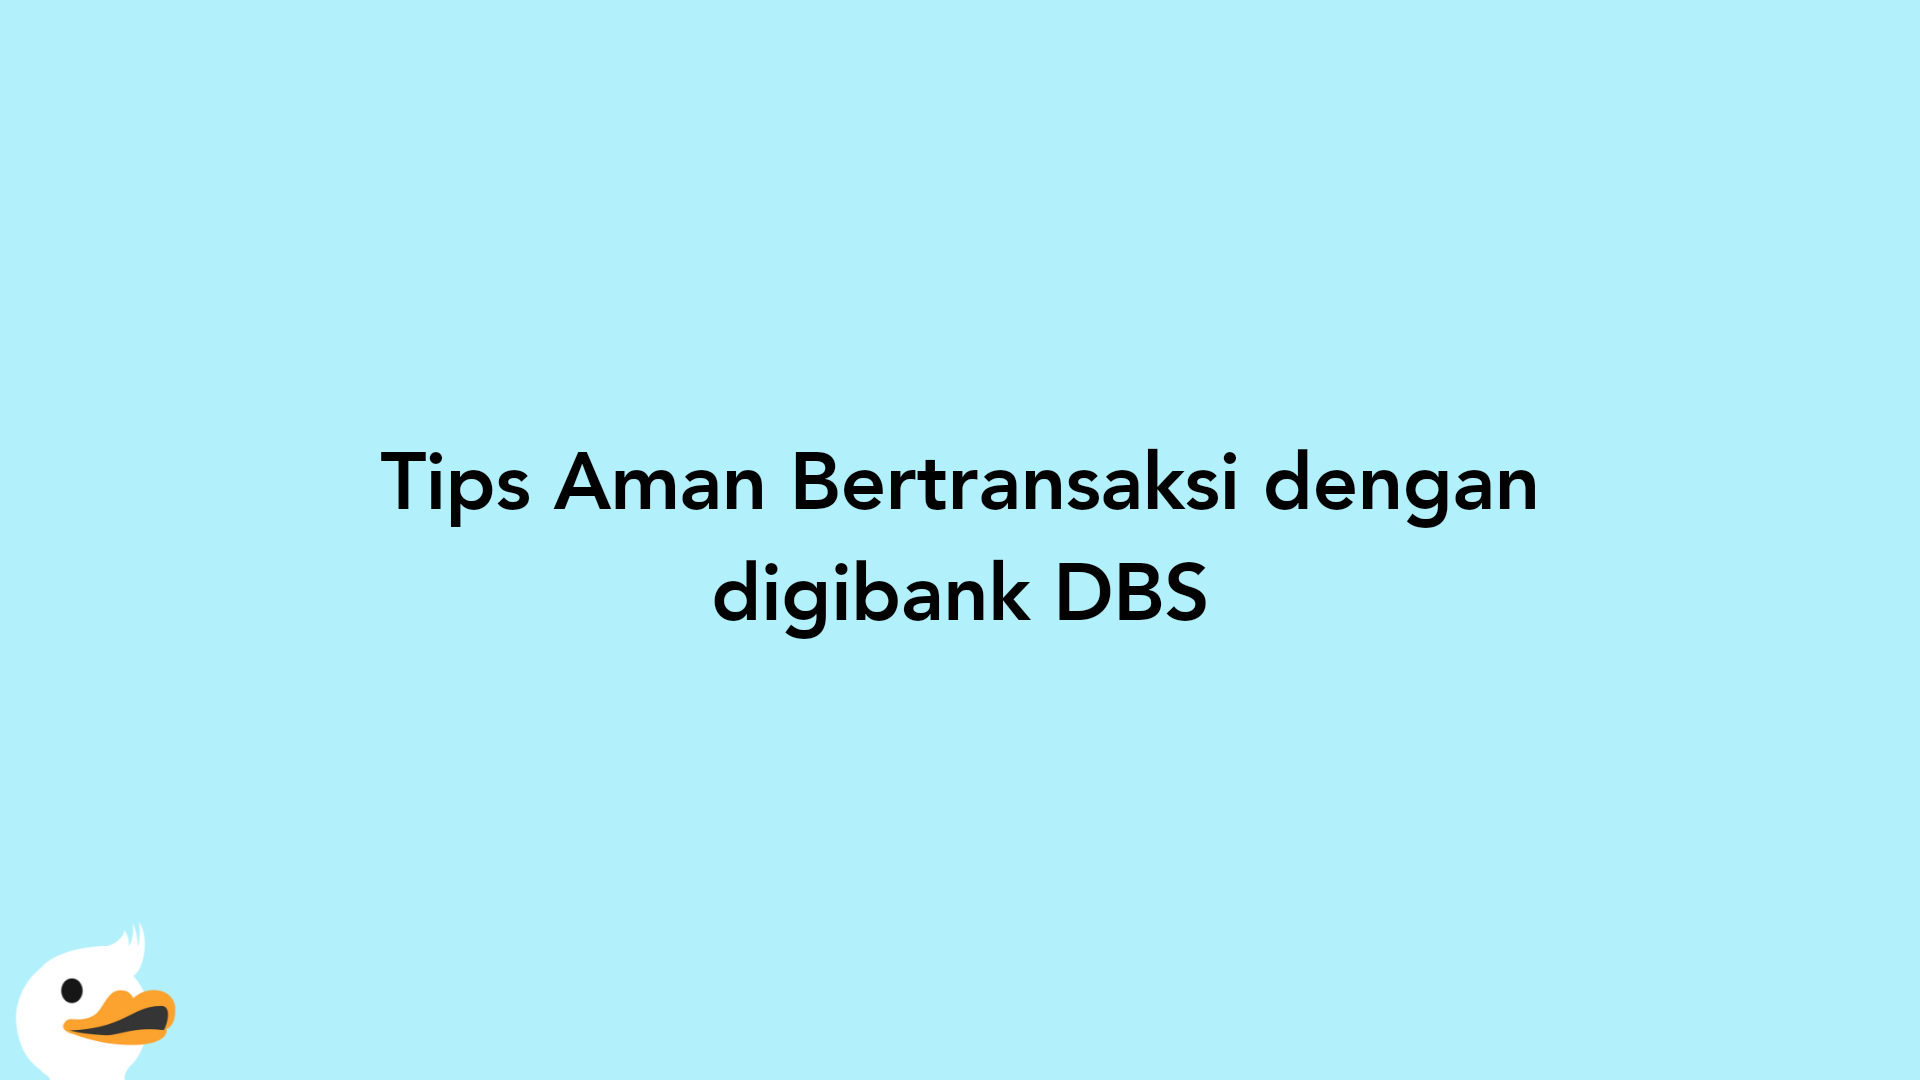 Tips Aman Bertransaksi dengan digibank DBS